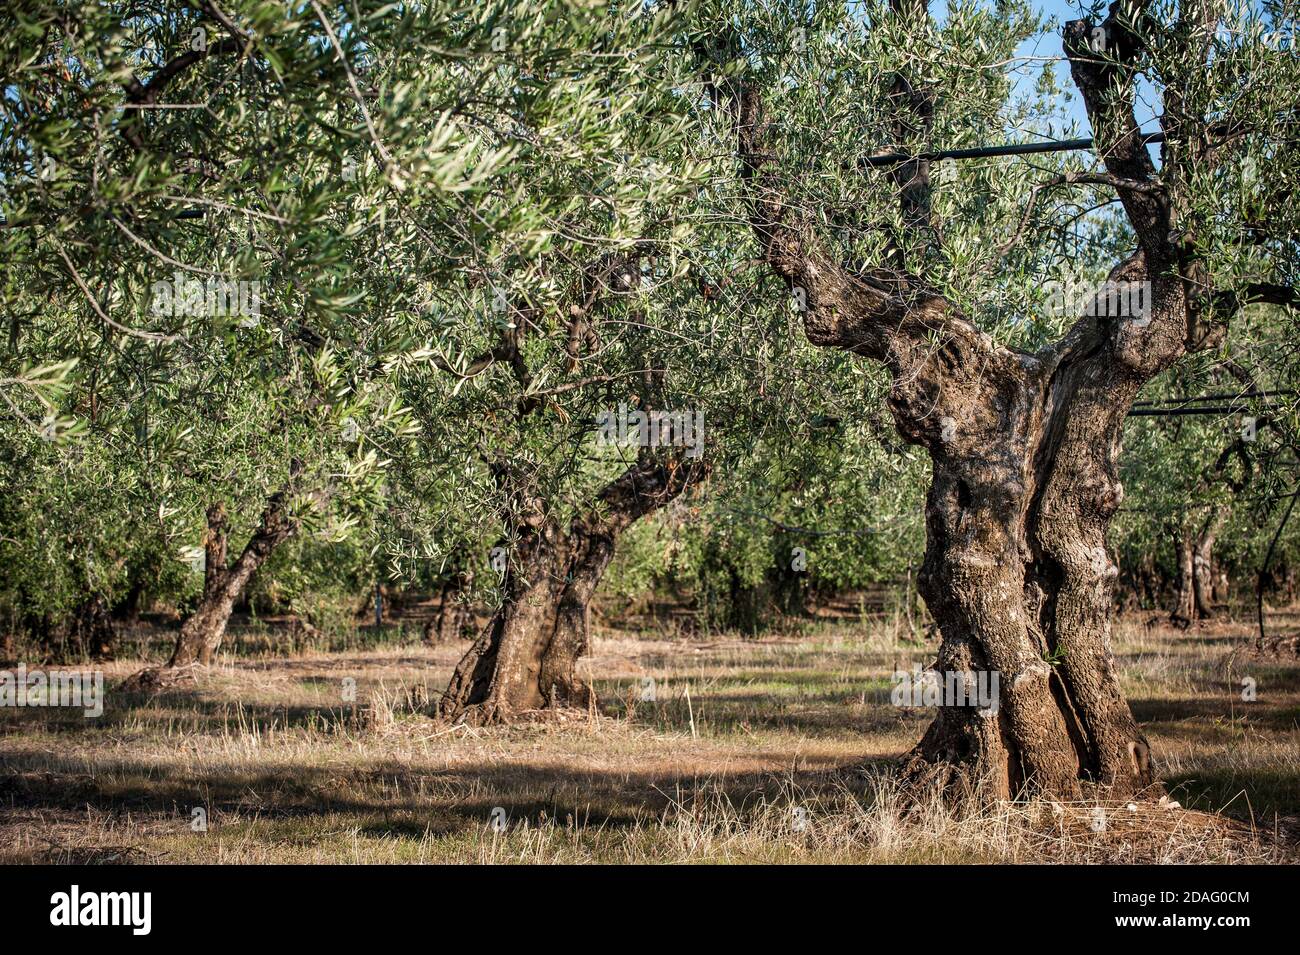 centenary olive trees in Italy Stock Photo